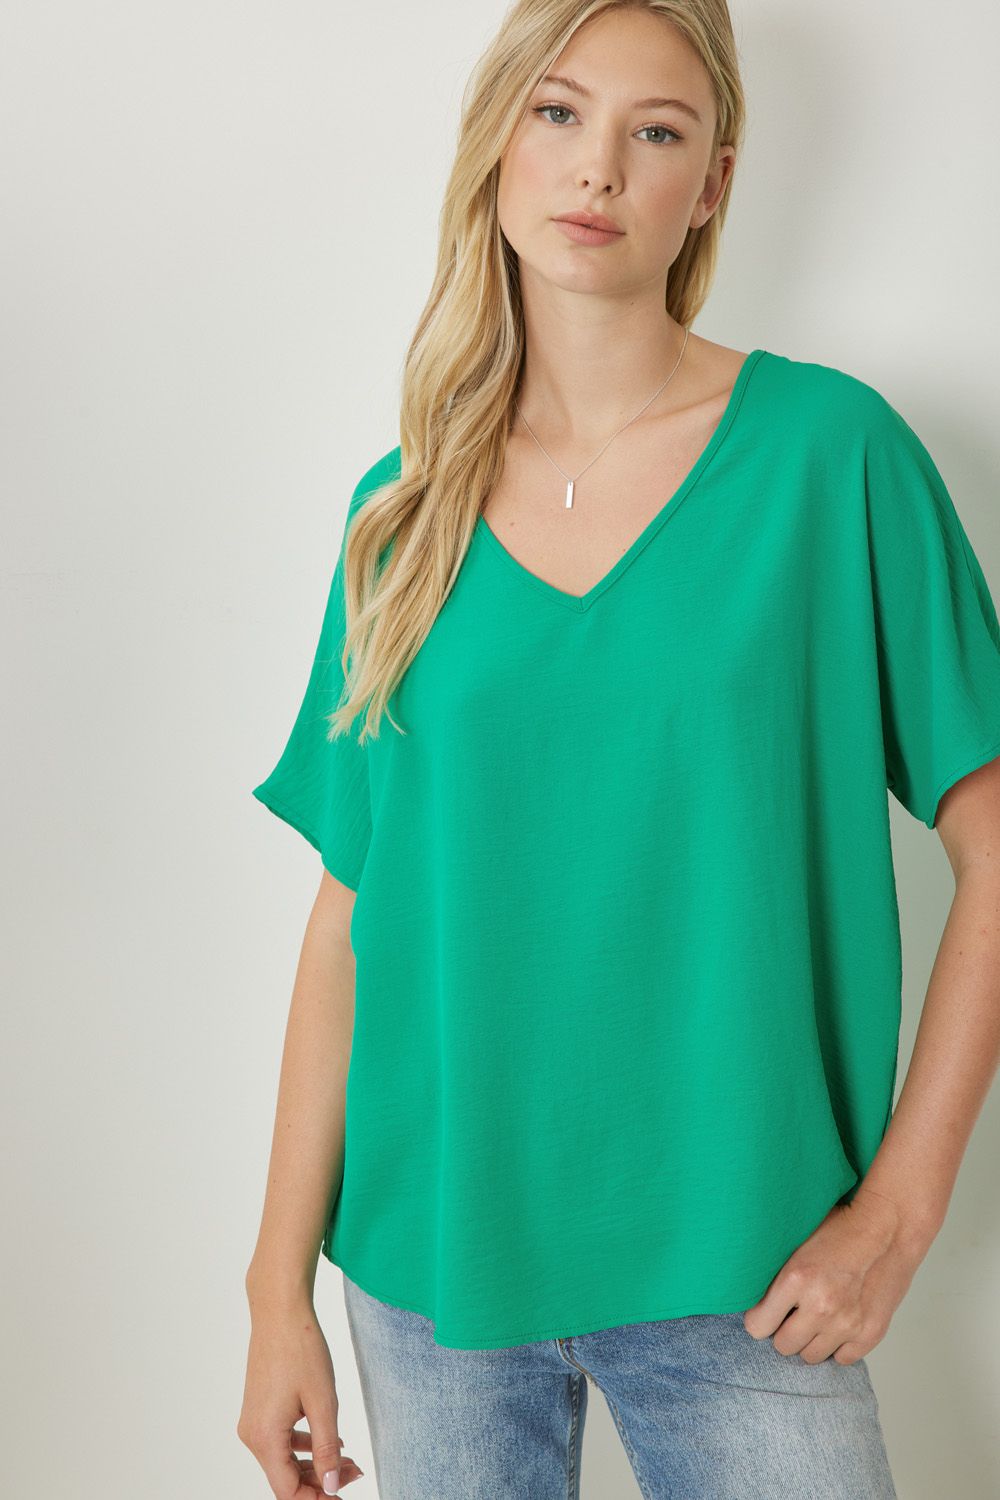 Women's green basic v-neck shirt.